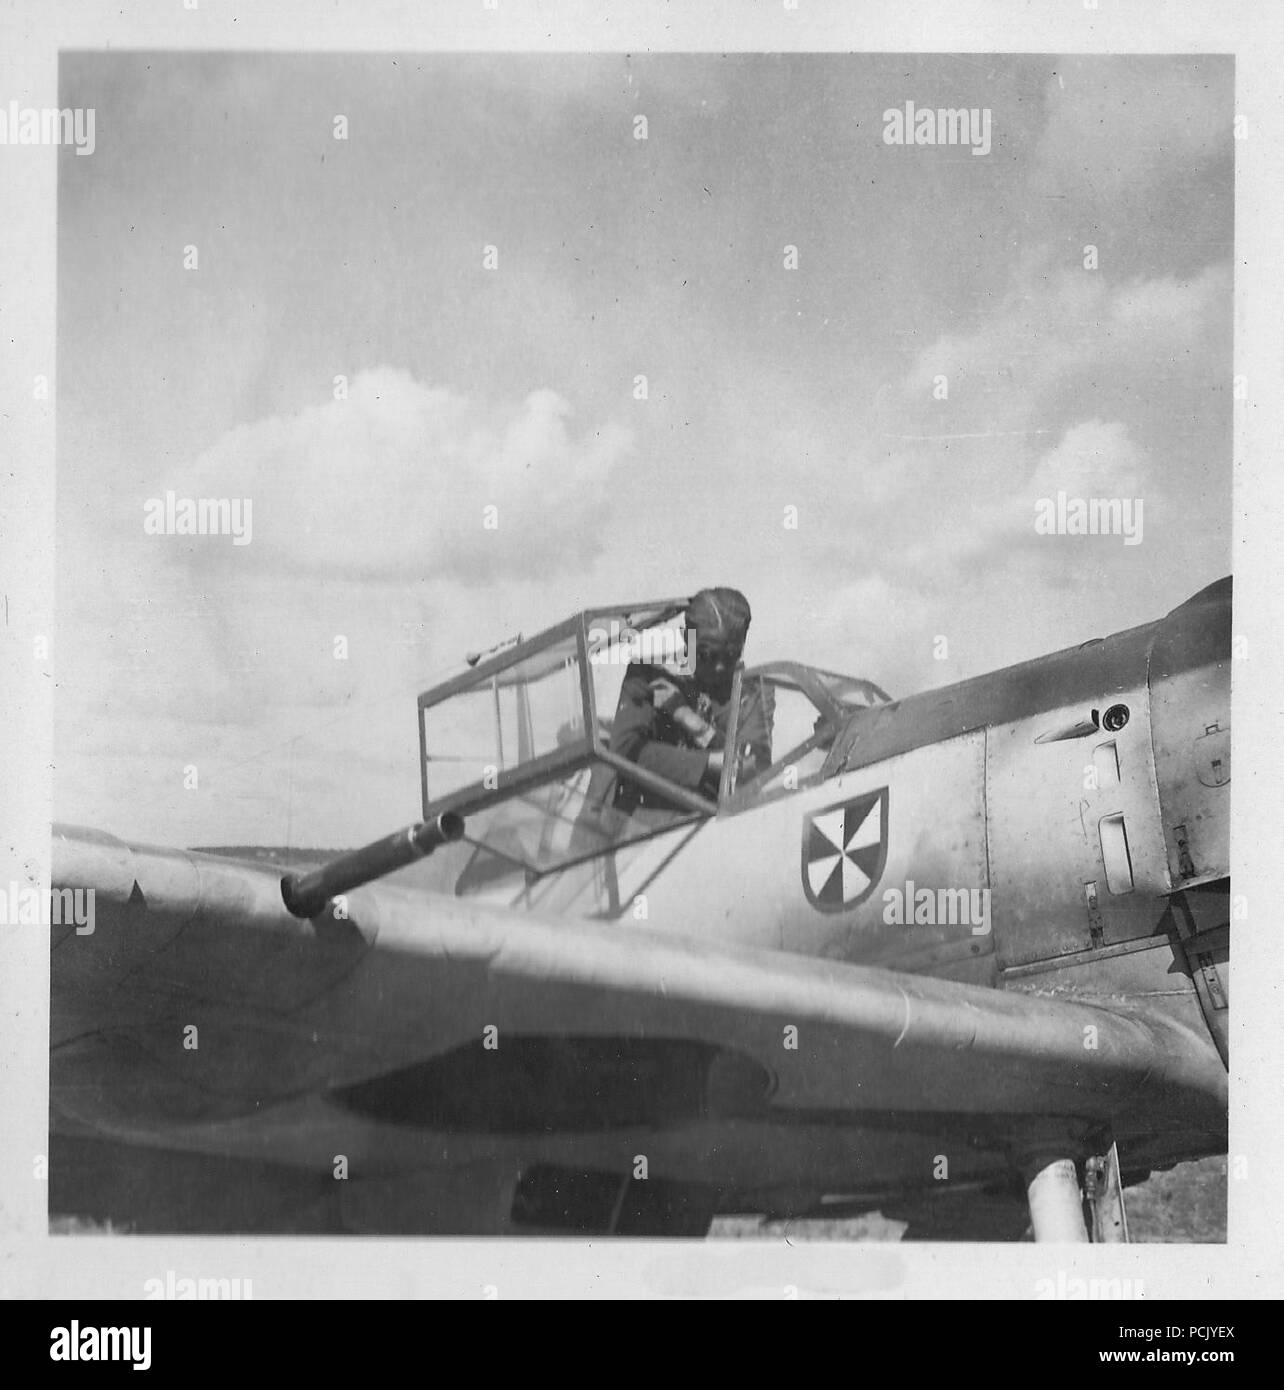 Image à partir d'un album de photos relatives à II. Gruppe, Jagdgeschwader 3 : l'oberleutnant Franz von Werra, Gruppen Capitaine-adjudant de II. Gruppe, Jagdgeschwader 3, se prépare à sortir de son BF109E durant l'été 1940. Banque D'Images